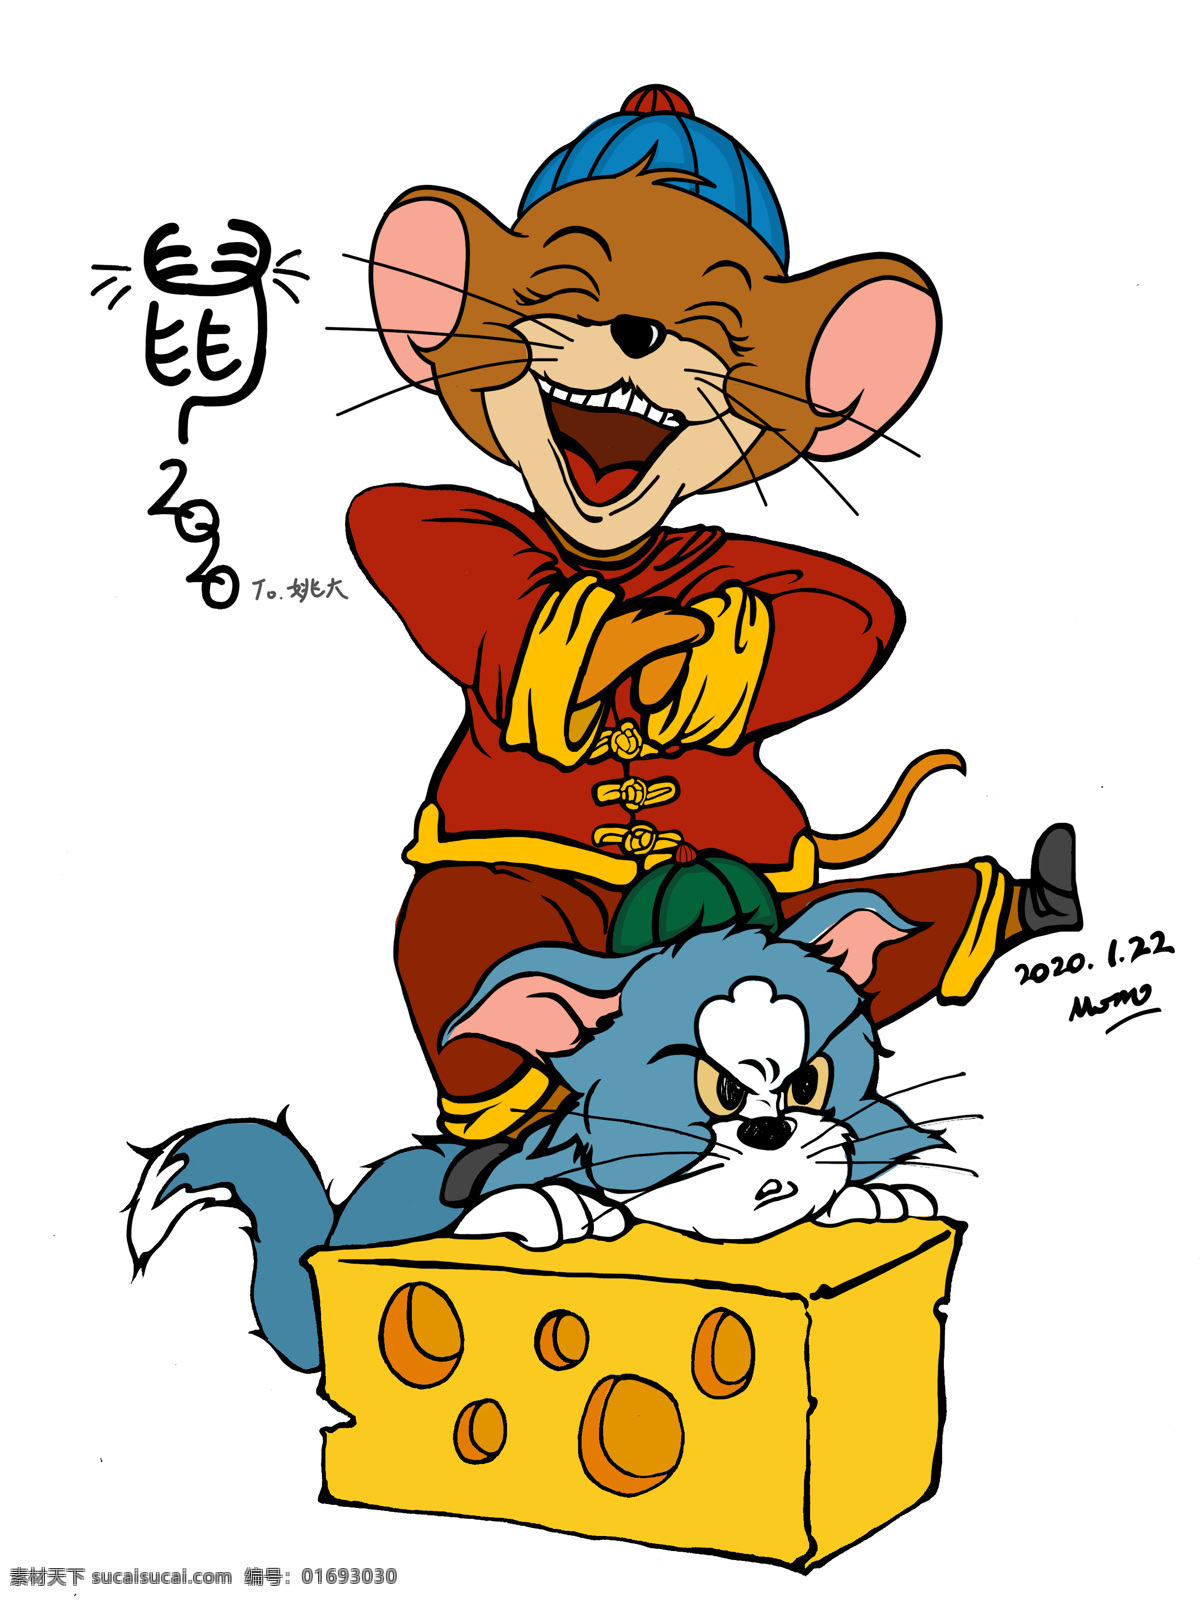 鼠年贺岁 鼠年 新春 贺岁 绘画 动物 动漫动画